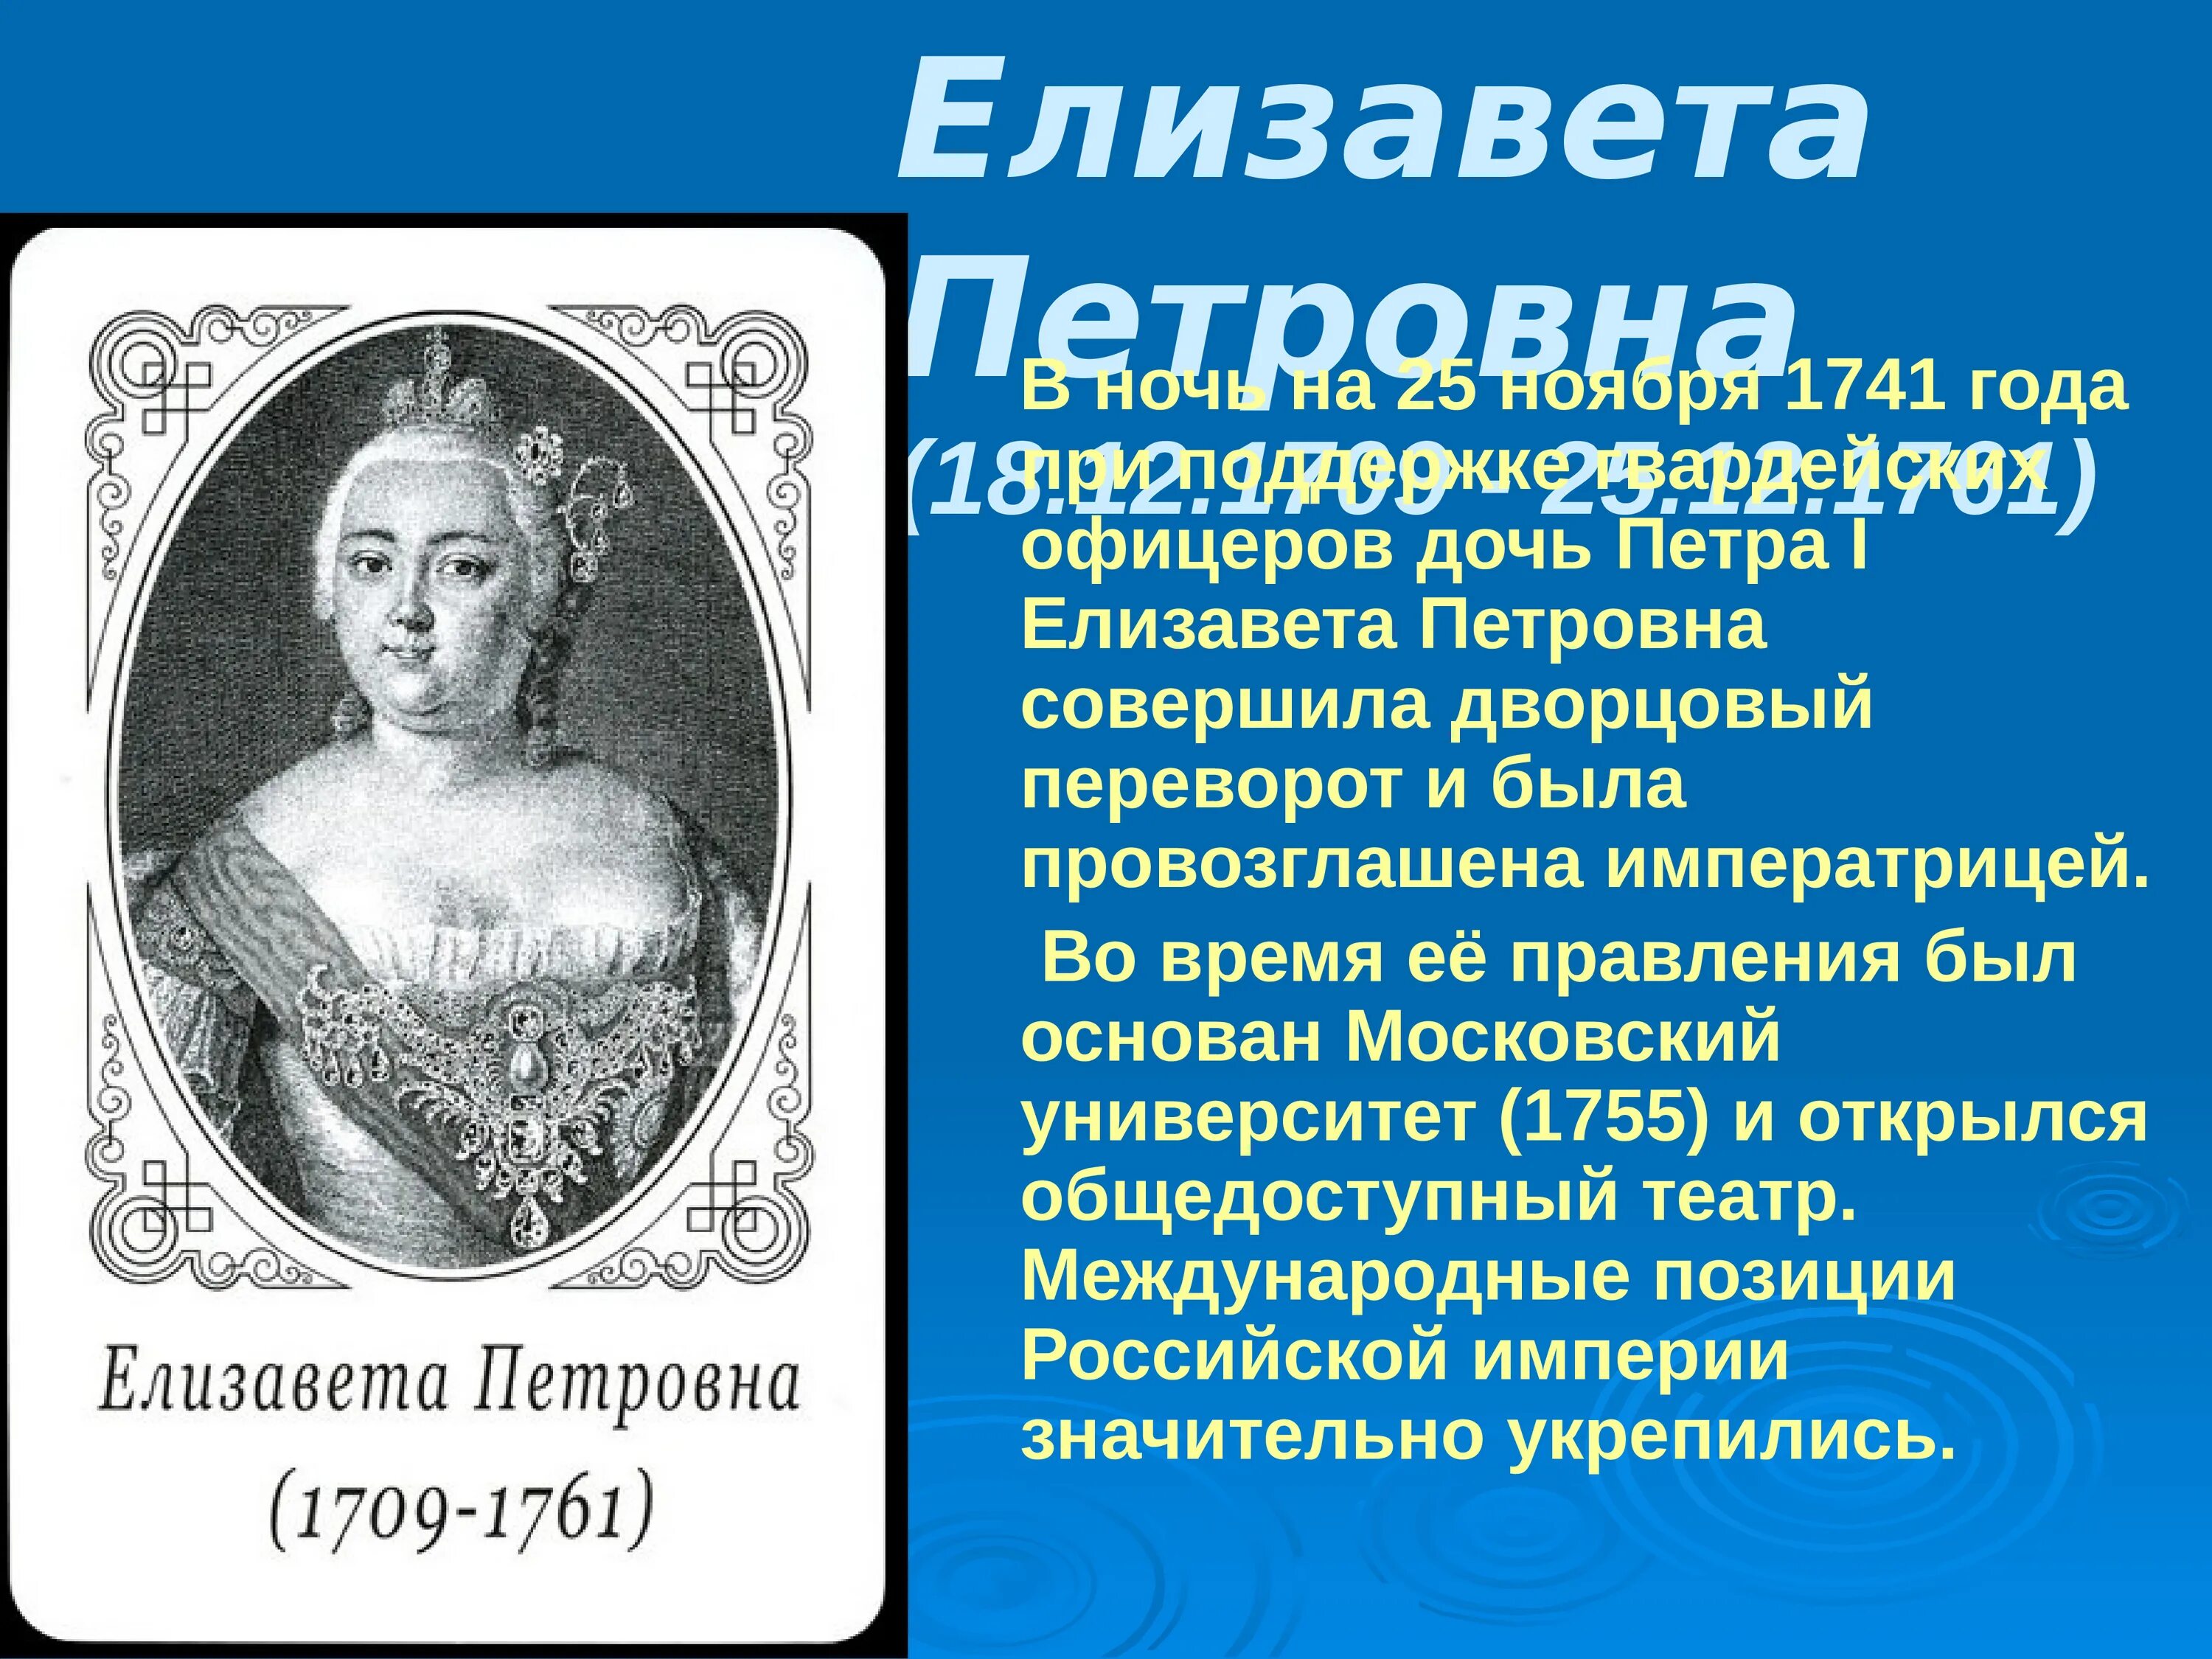 Сообщение о елизавете петровне. Елизаветы Петровны в 1741 году.